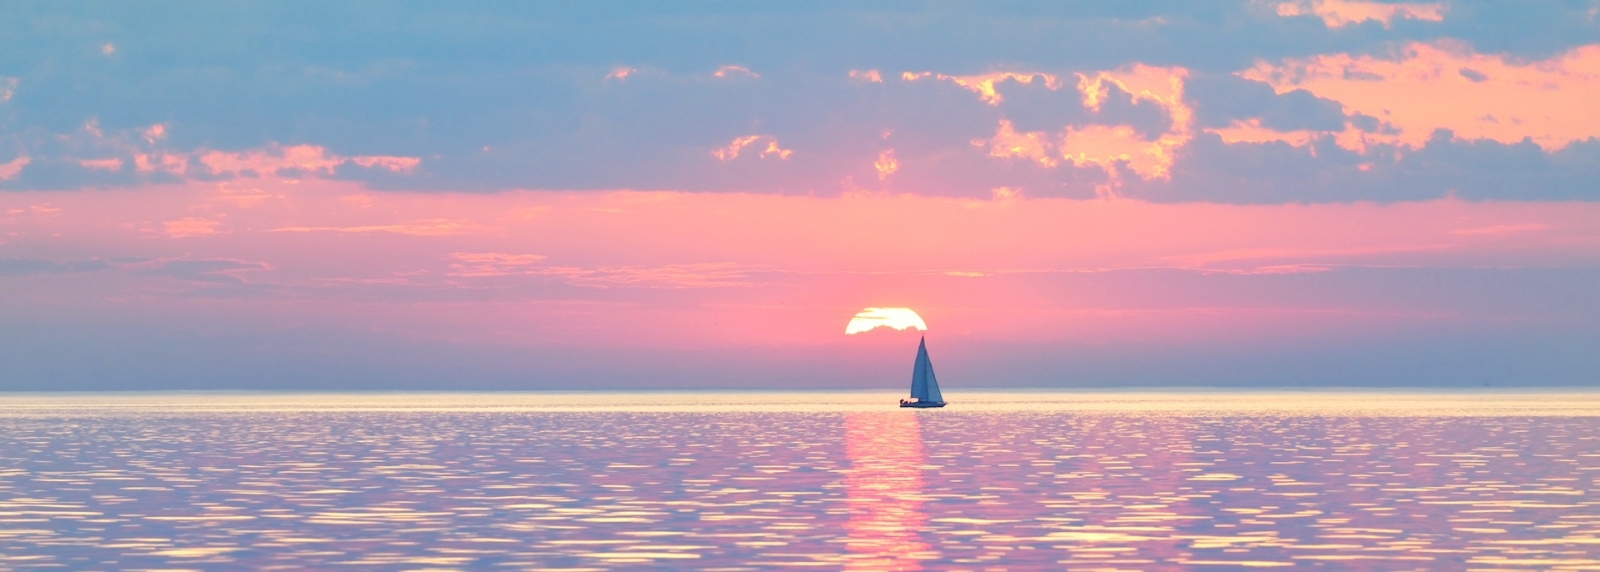 Sloop truccato yacht a vela in un Mar Baltico aperto al tramonto